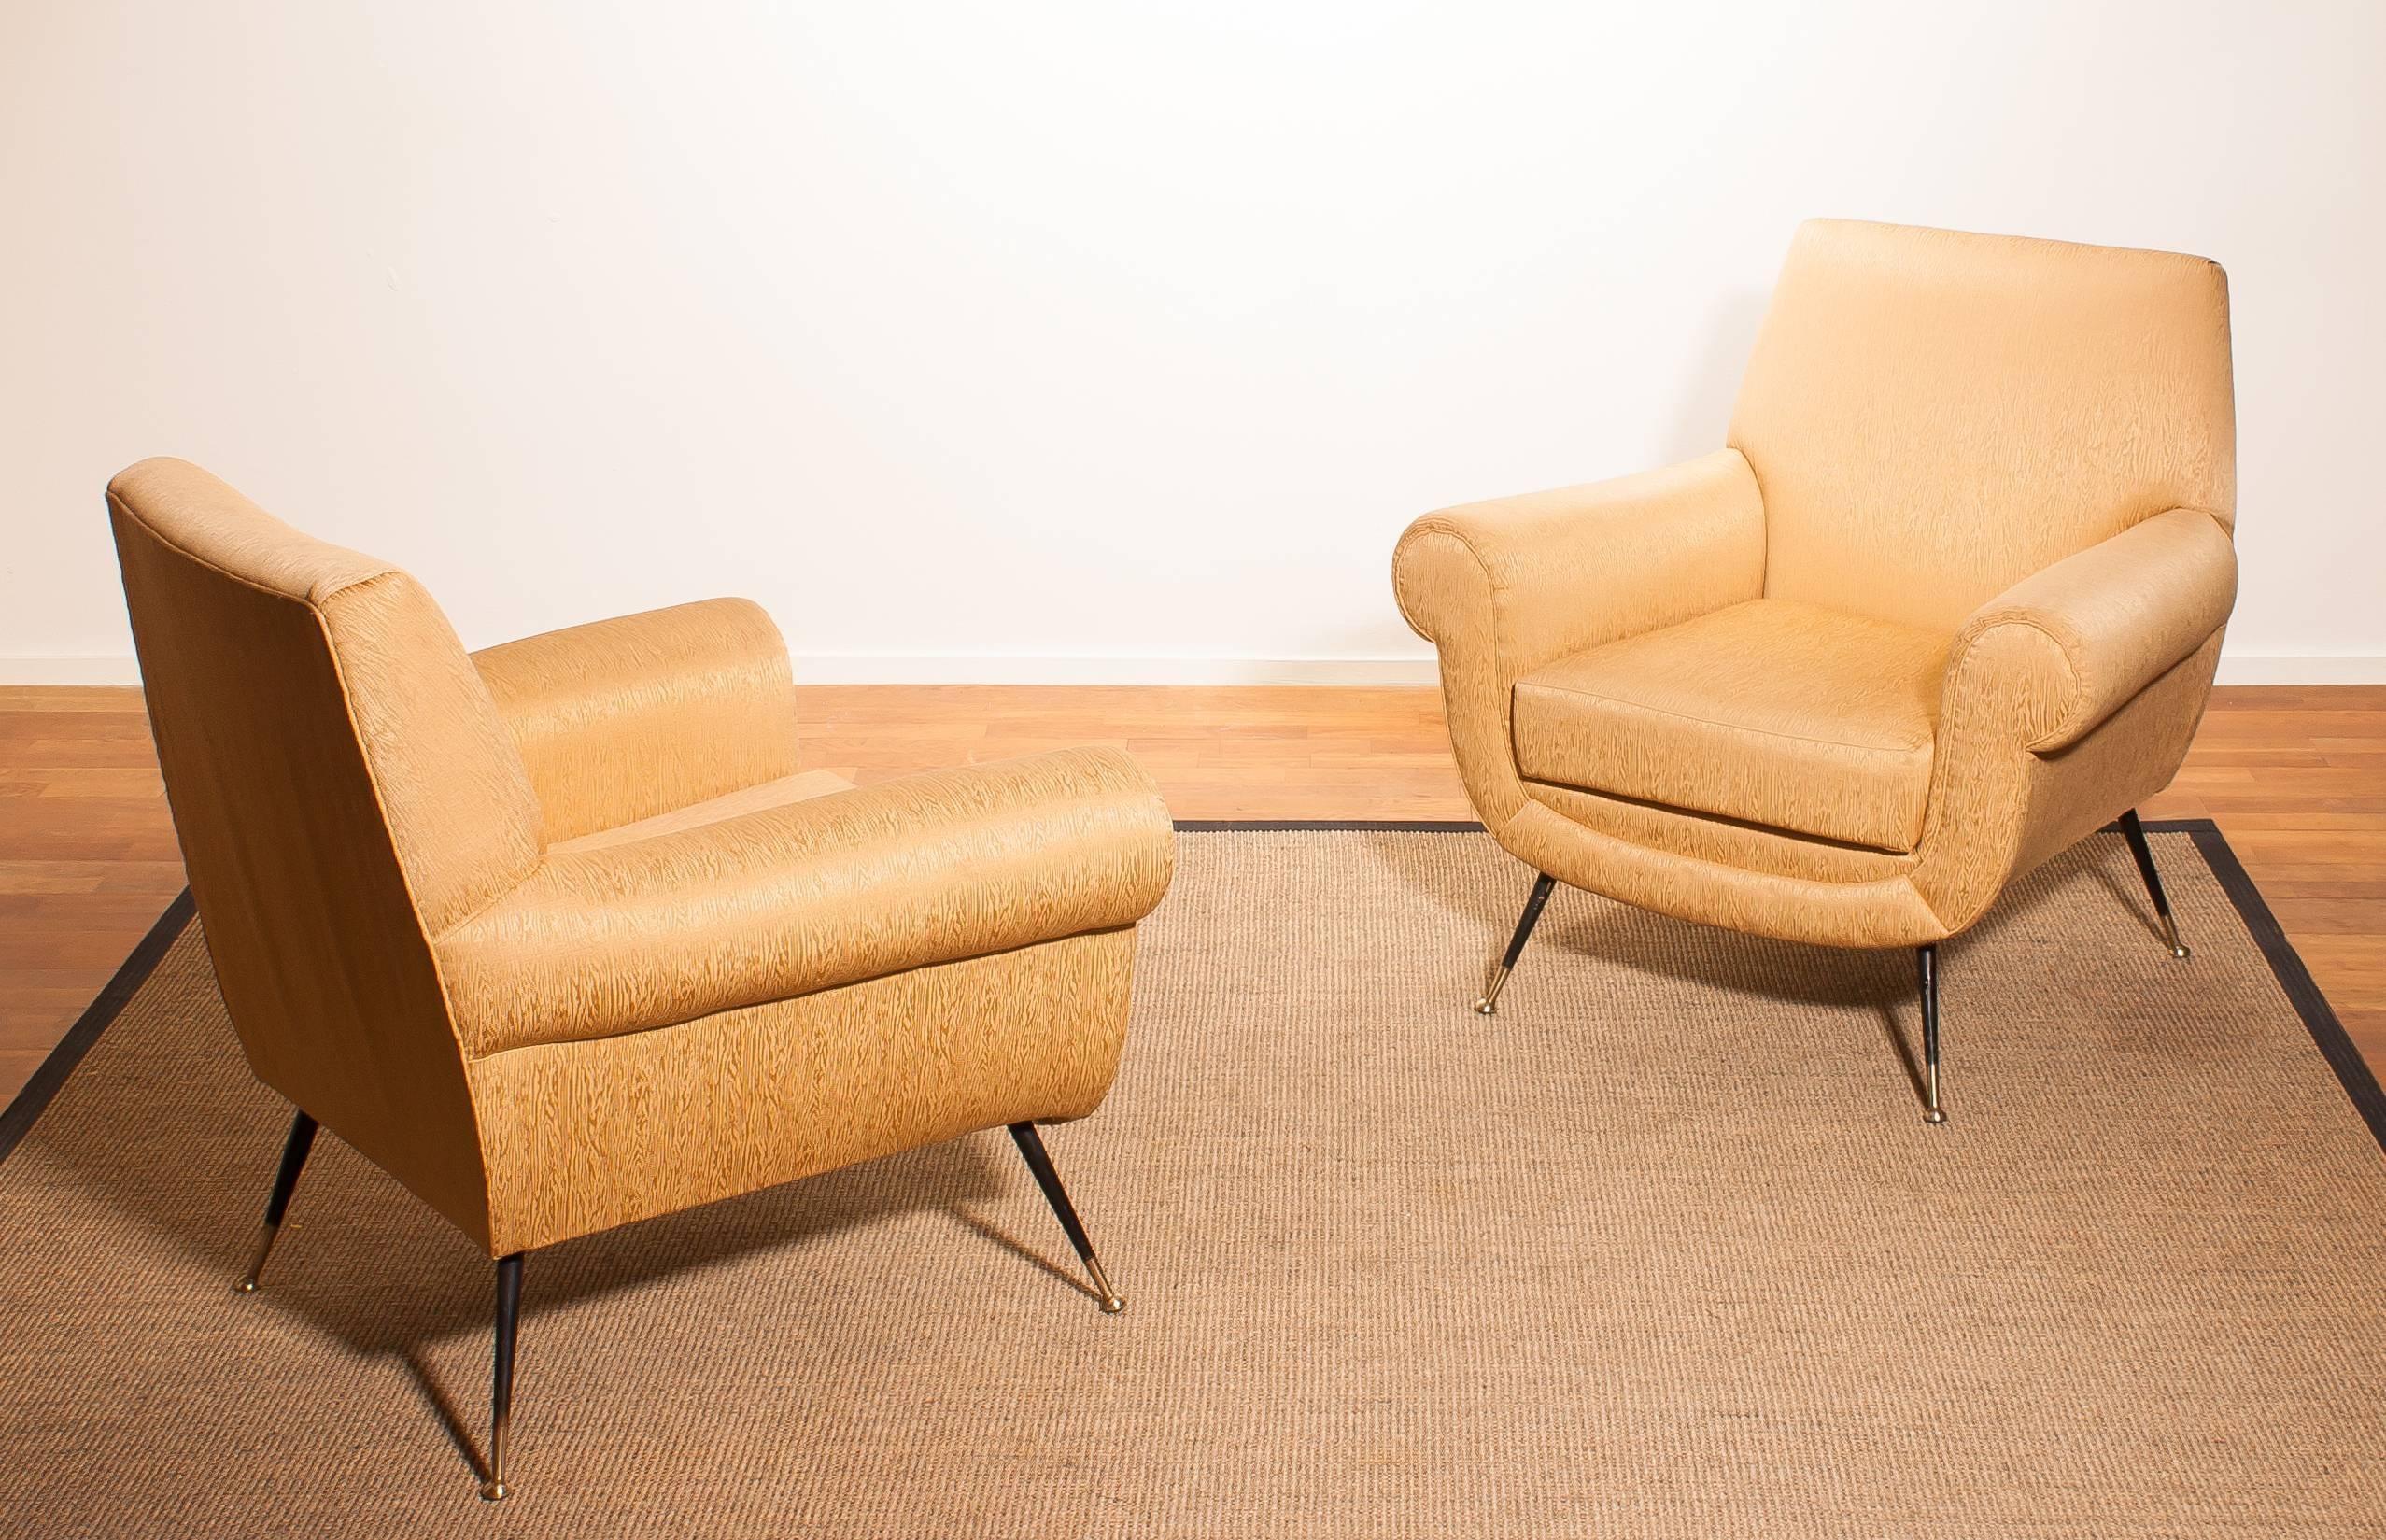 Italian Golden Jacquard Upholstered Easy Chairs by Gigi Radice for Minotti, Brass Legs.